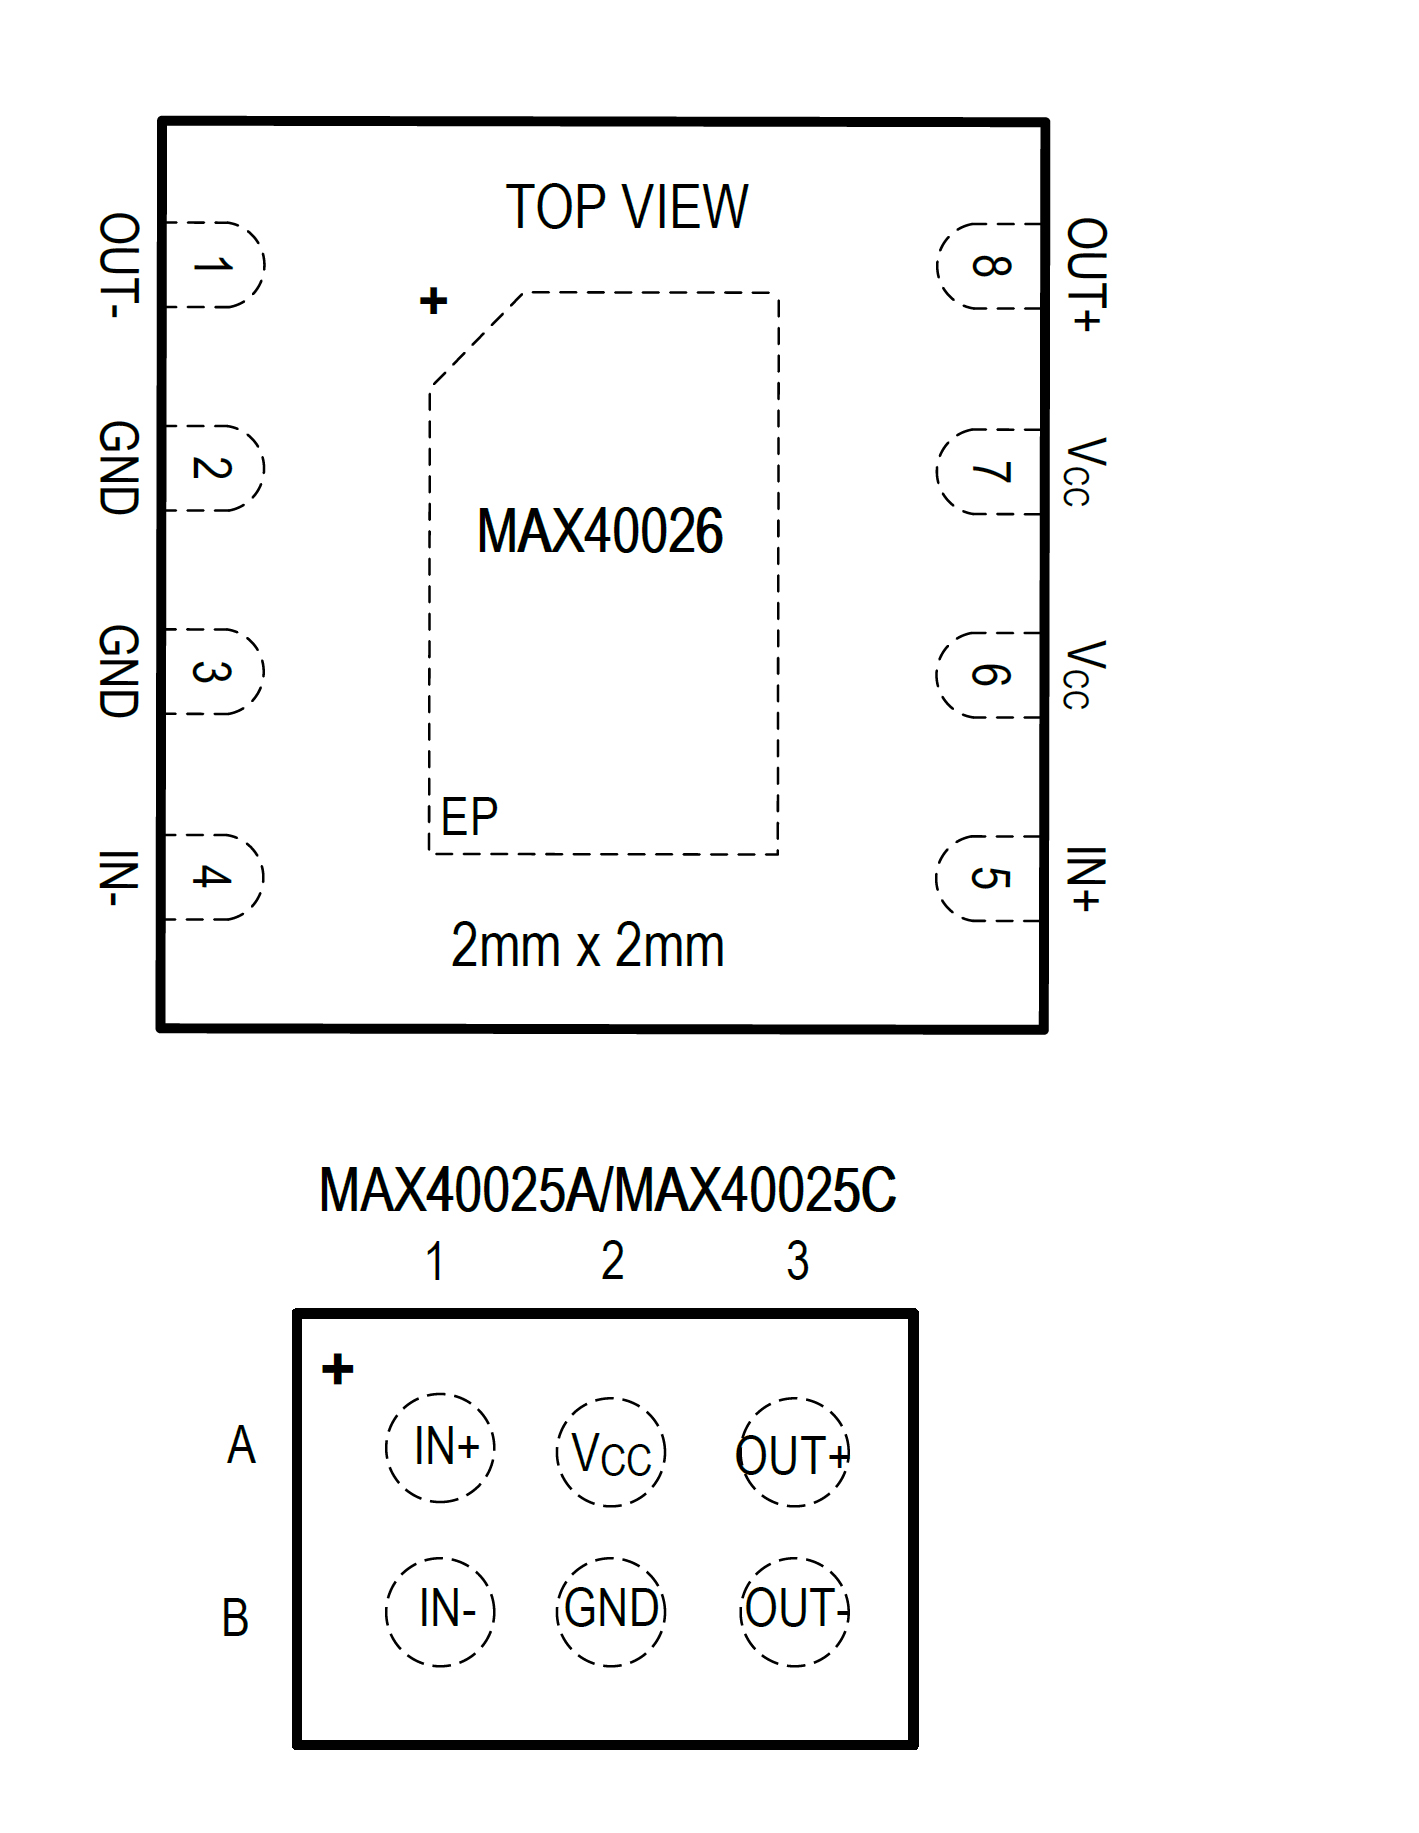 Afbeelding 5. De MAX40025 en MAX40026 zijn leverbaar in een WLP- of TDFN-behuizing van respectievelijk 1,218 x 0.818 mm of 2,0 x 2,0 mm.